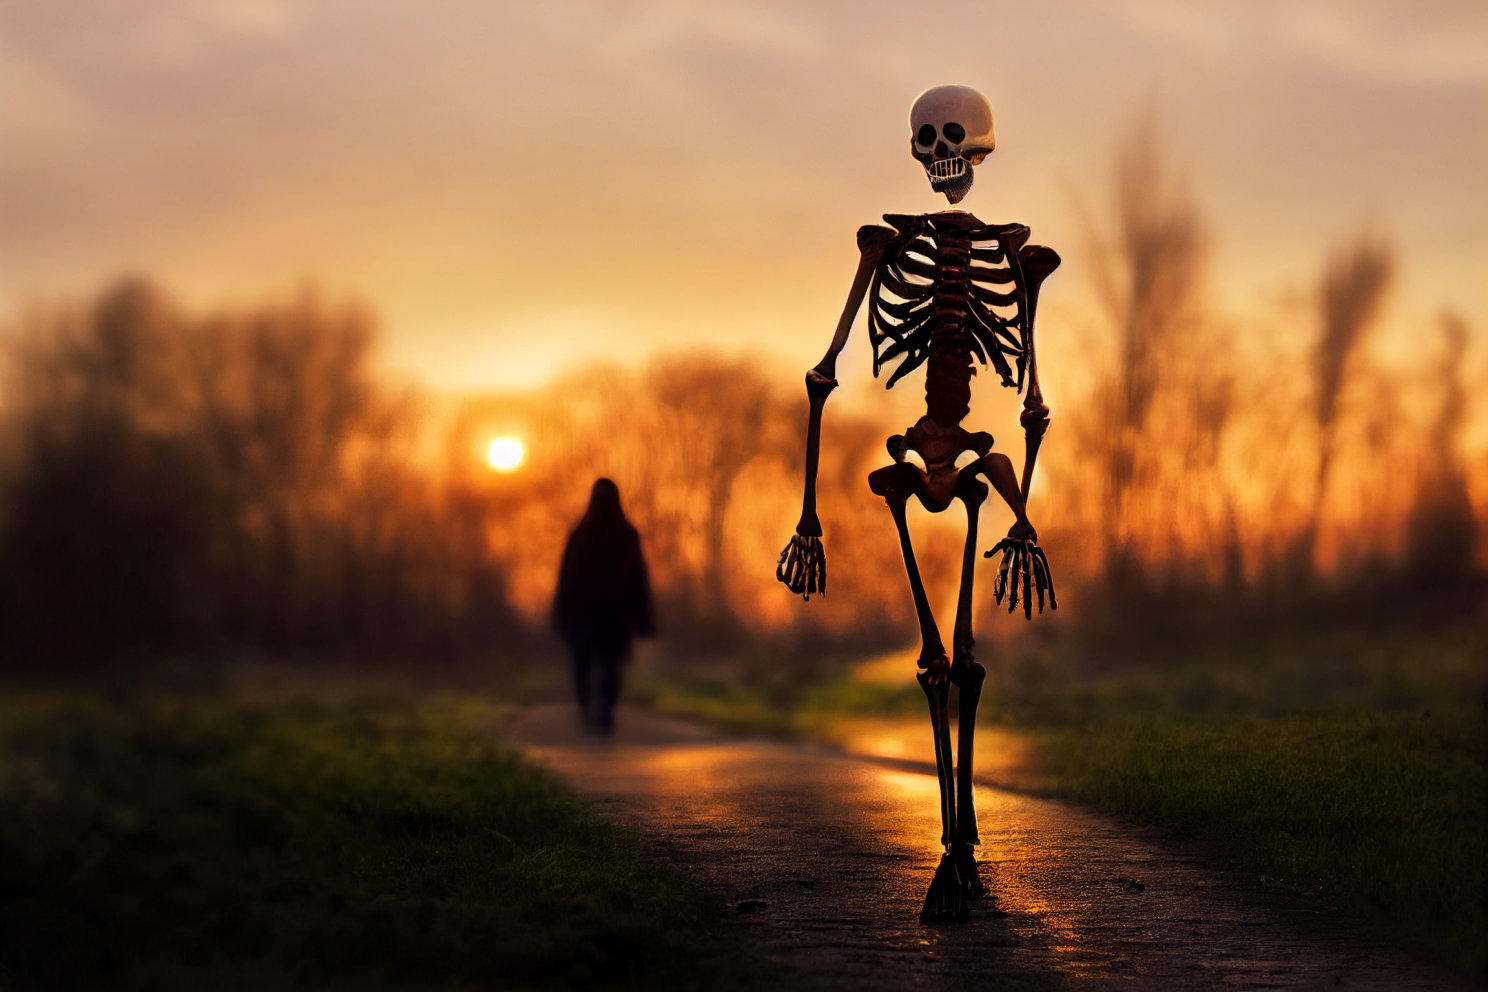 A Walking Skeleton at dusk